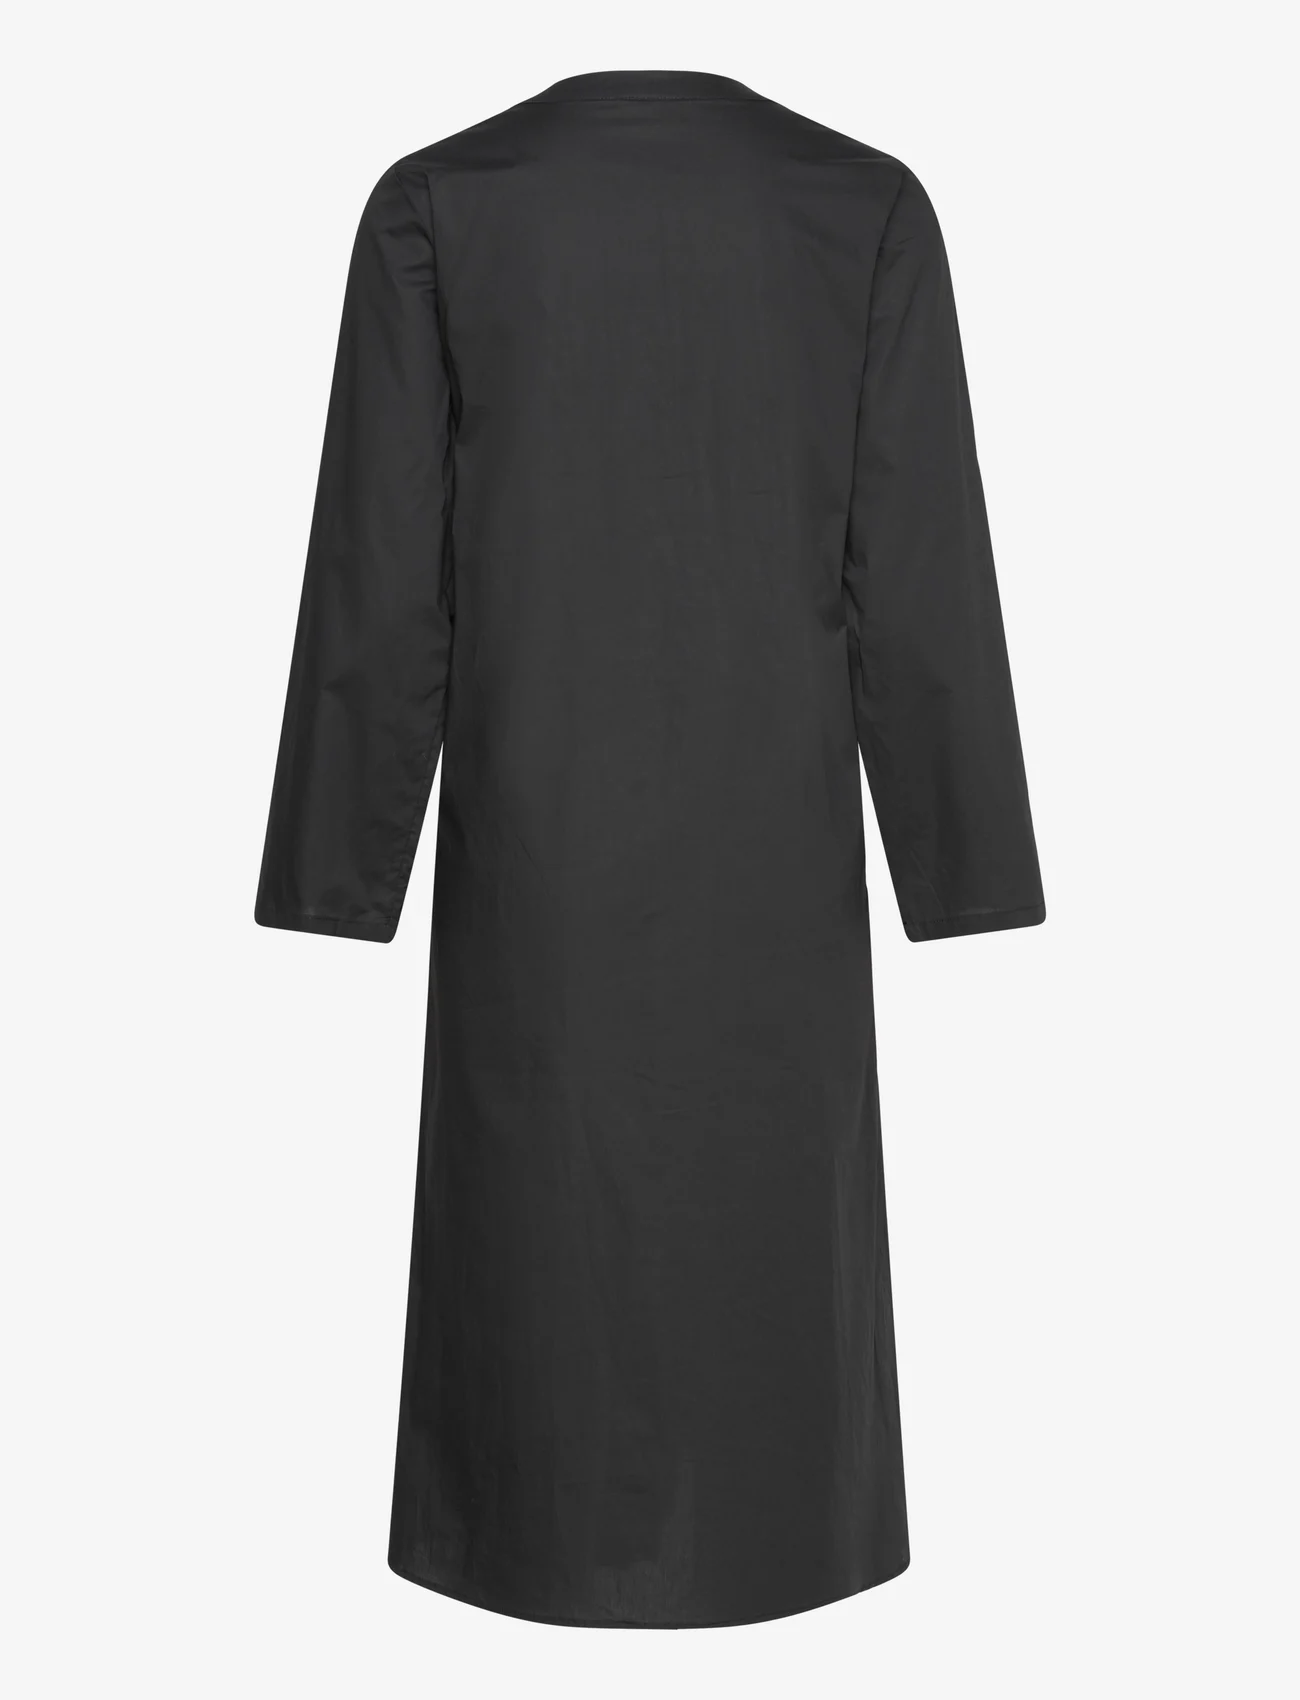 FREE/QUENT - FQMALAY-DRESS - marškinių tipo suknelės - black - 1